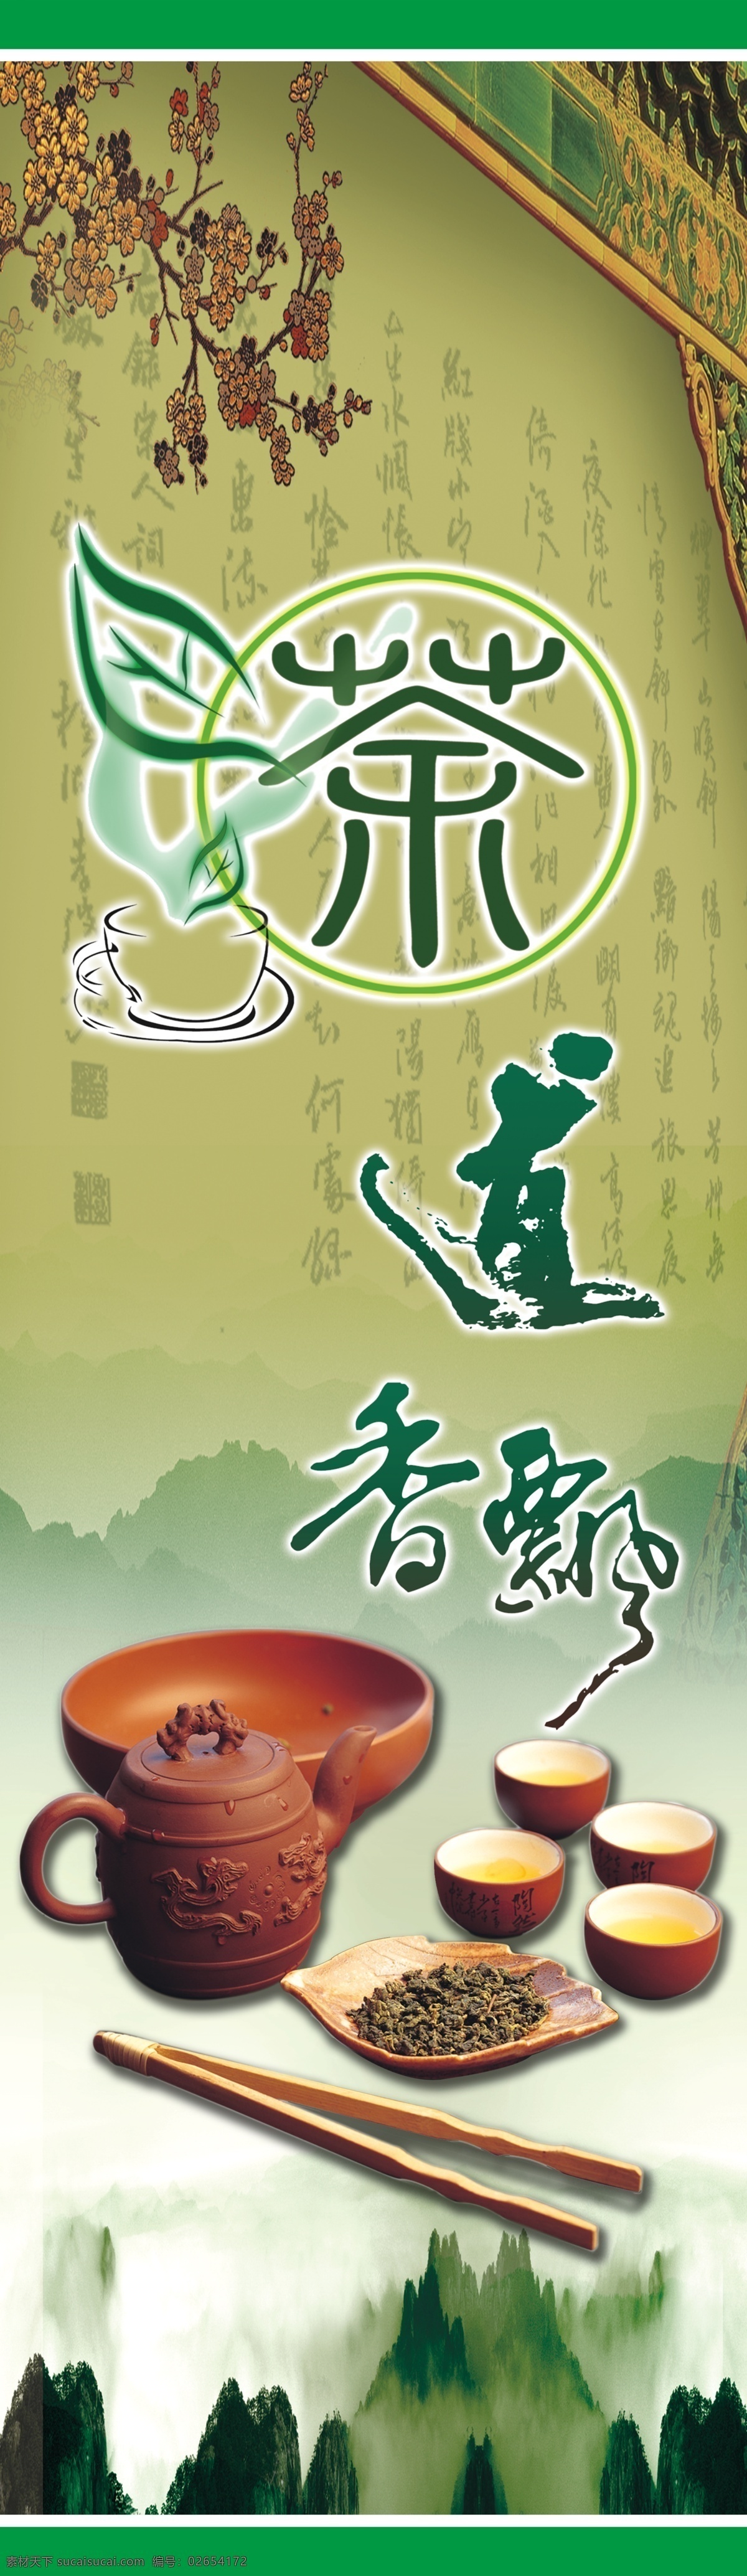 茶道 展板 茶 茶具 广告设计模板 绿色背景 源文件 展板模板 茶道展板 茶飘香 山丛